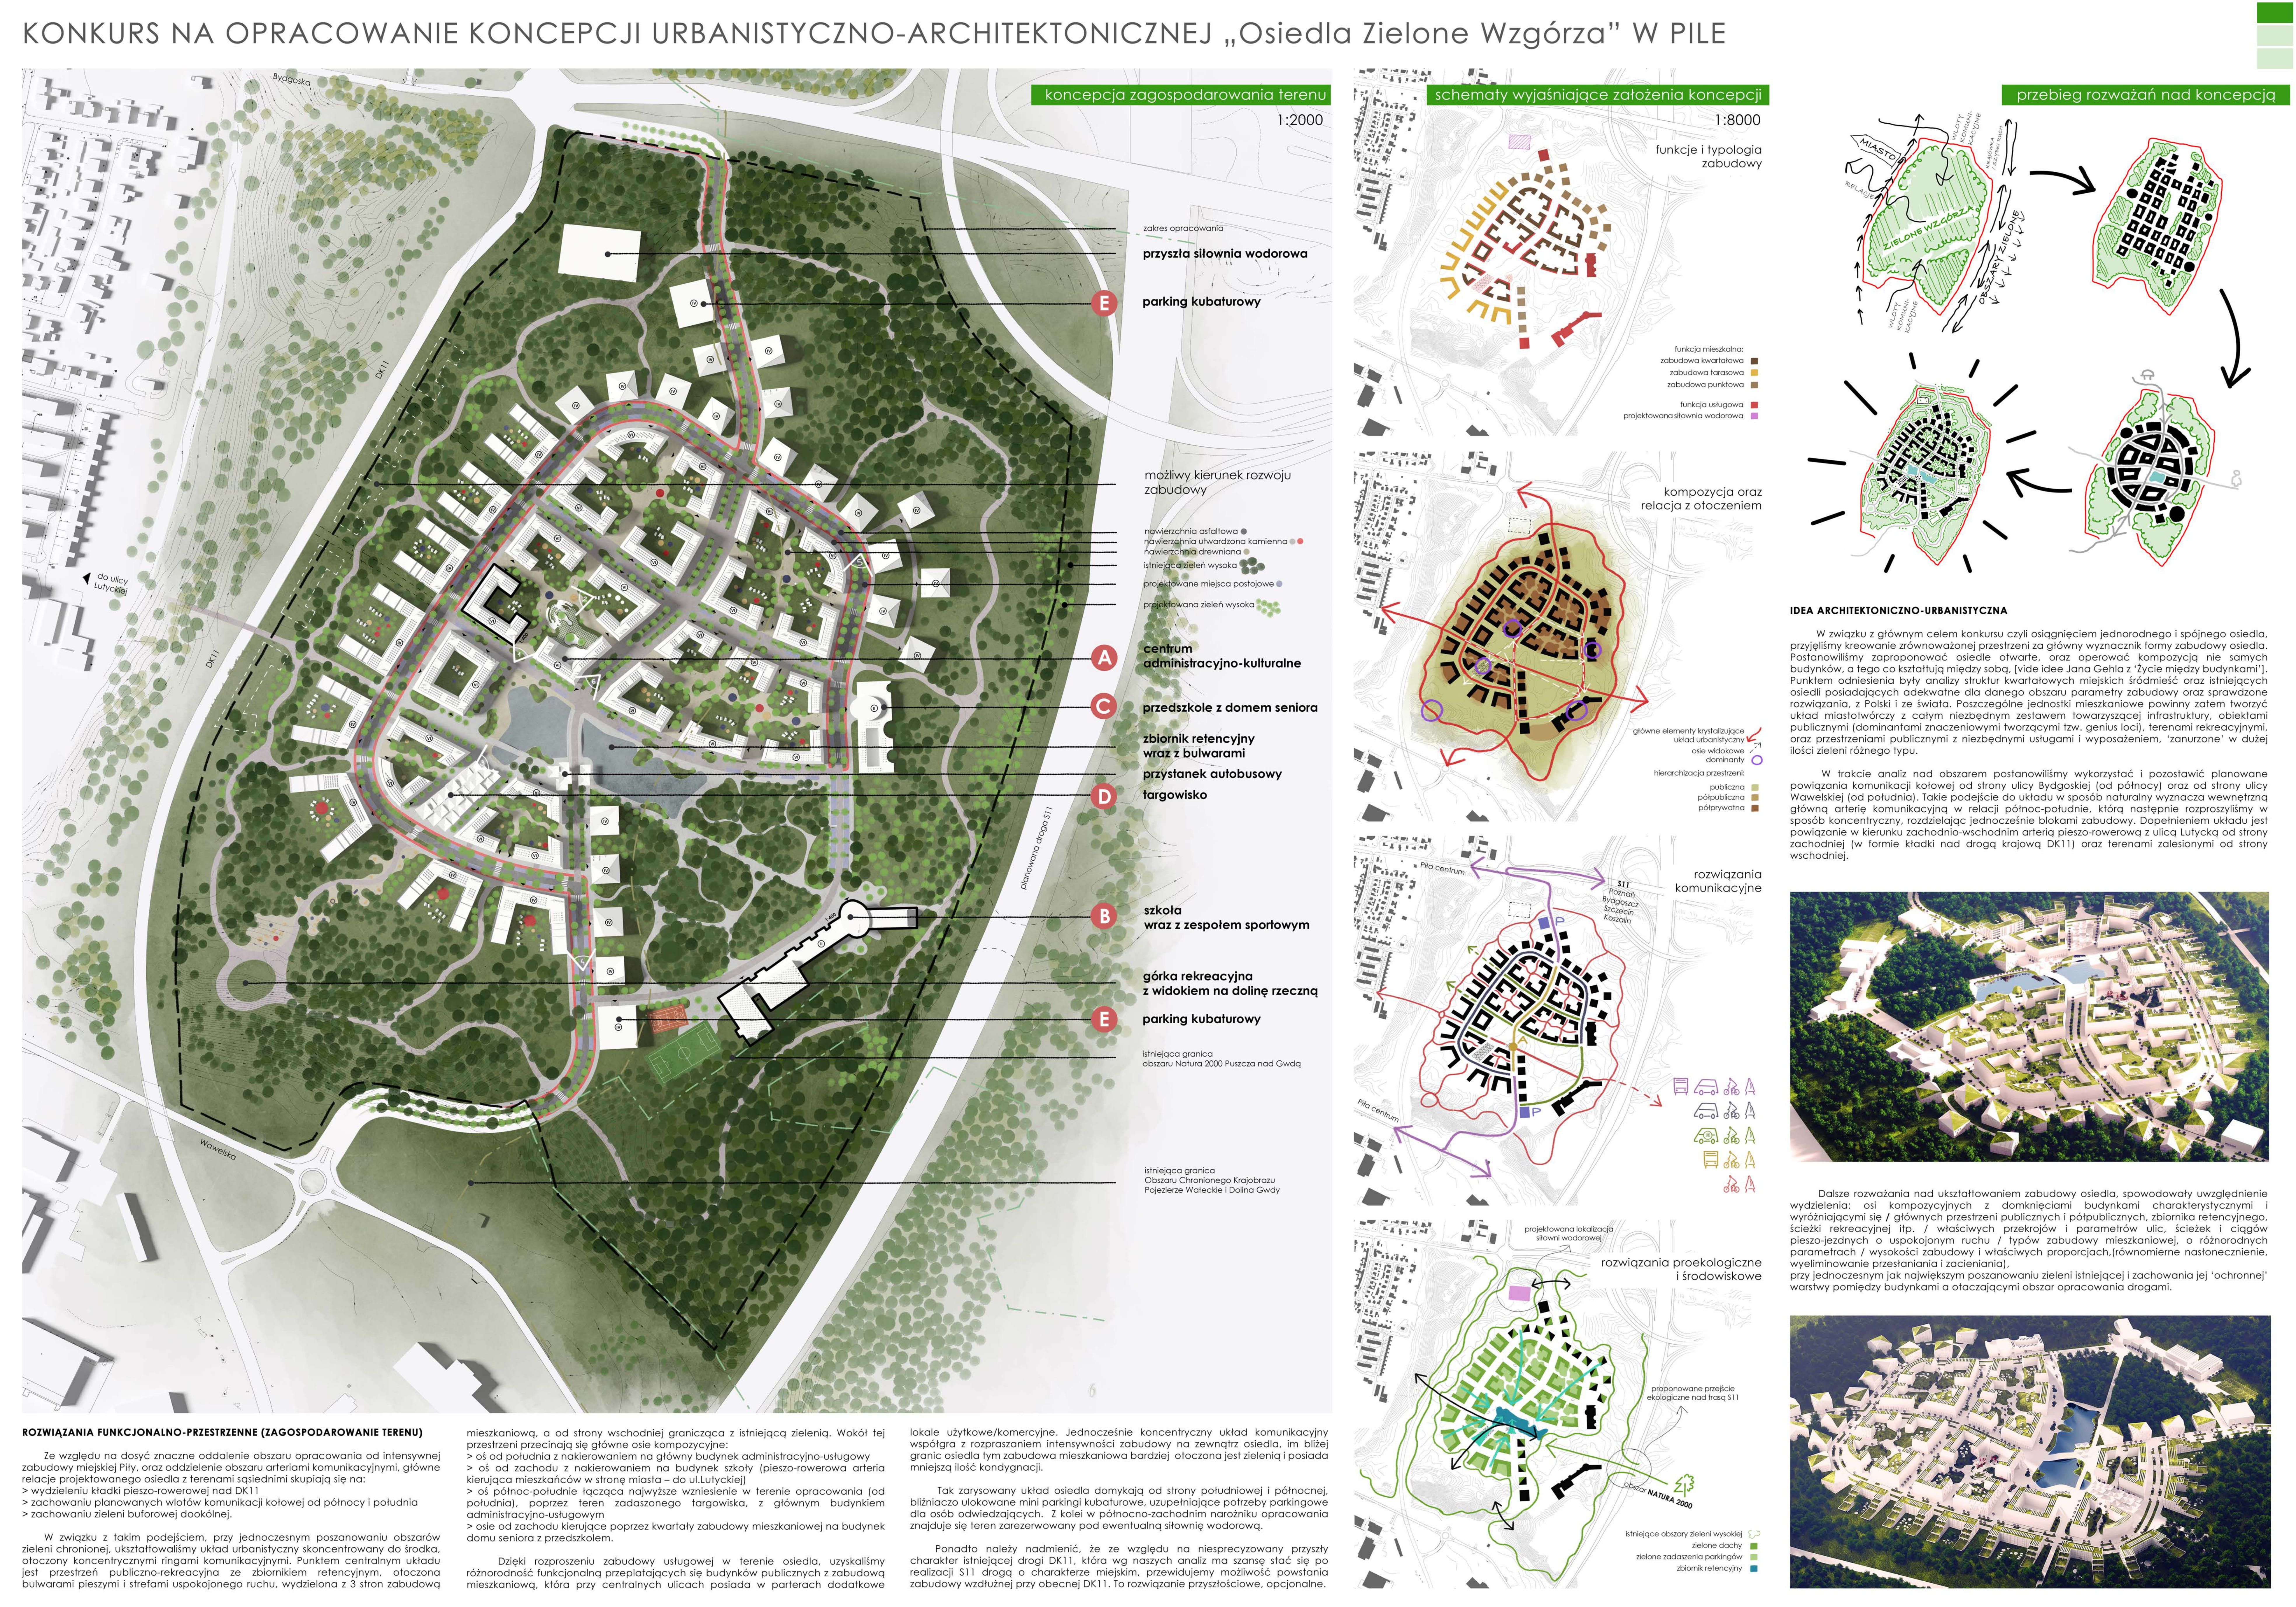 Wizualizacja koncepcji urbanistyczno-architektonicznej osiedla Zielone Wzkórz w Pile.